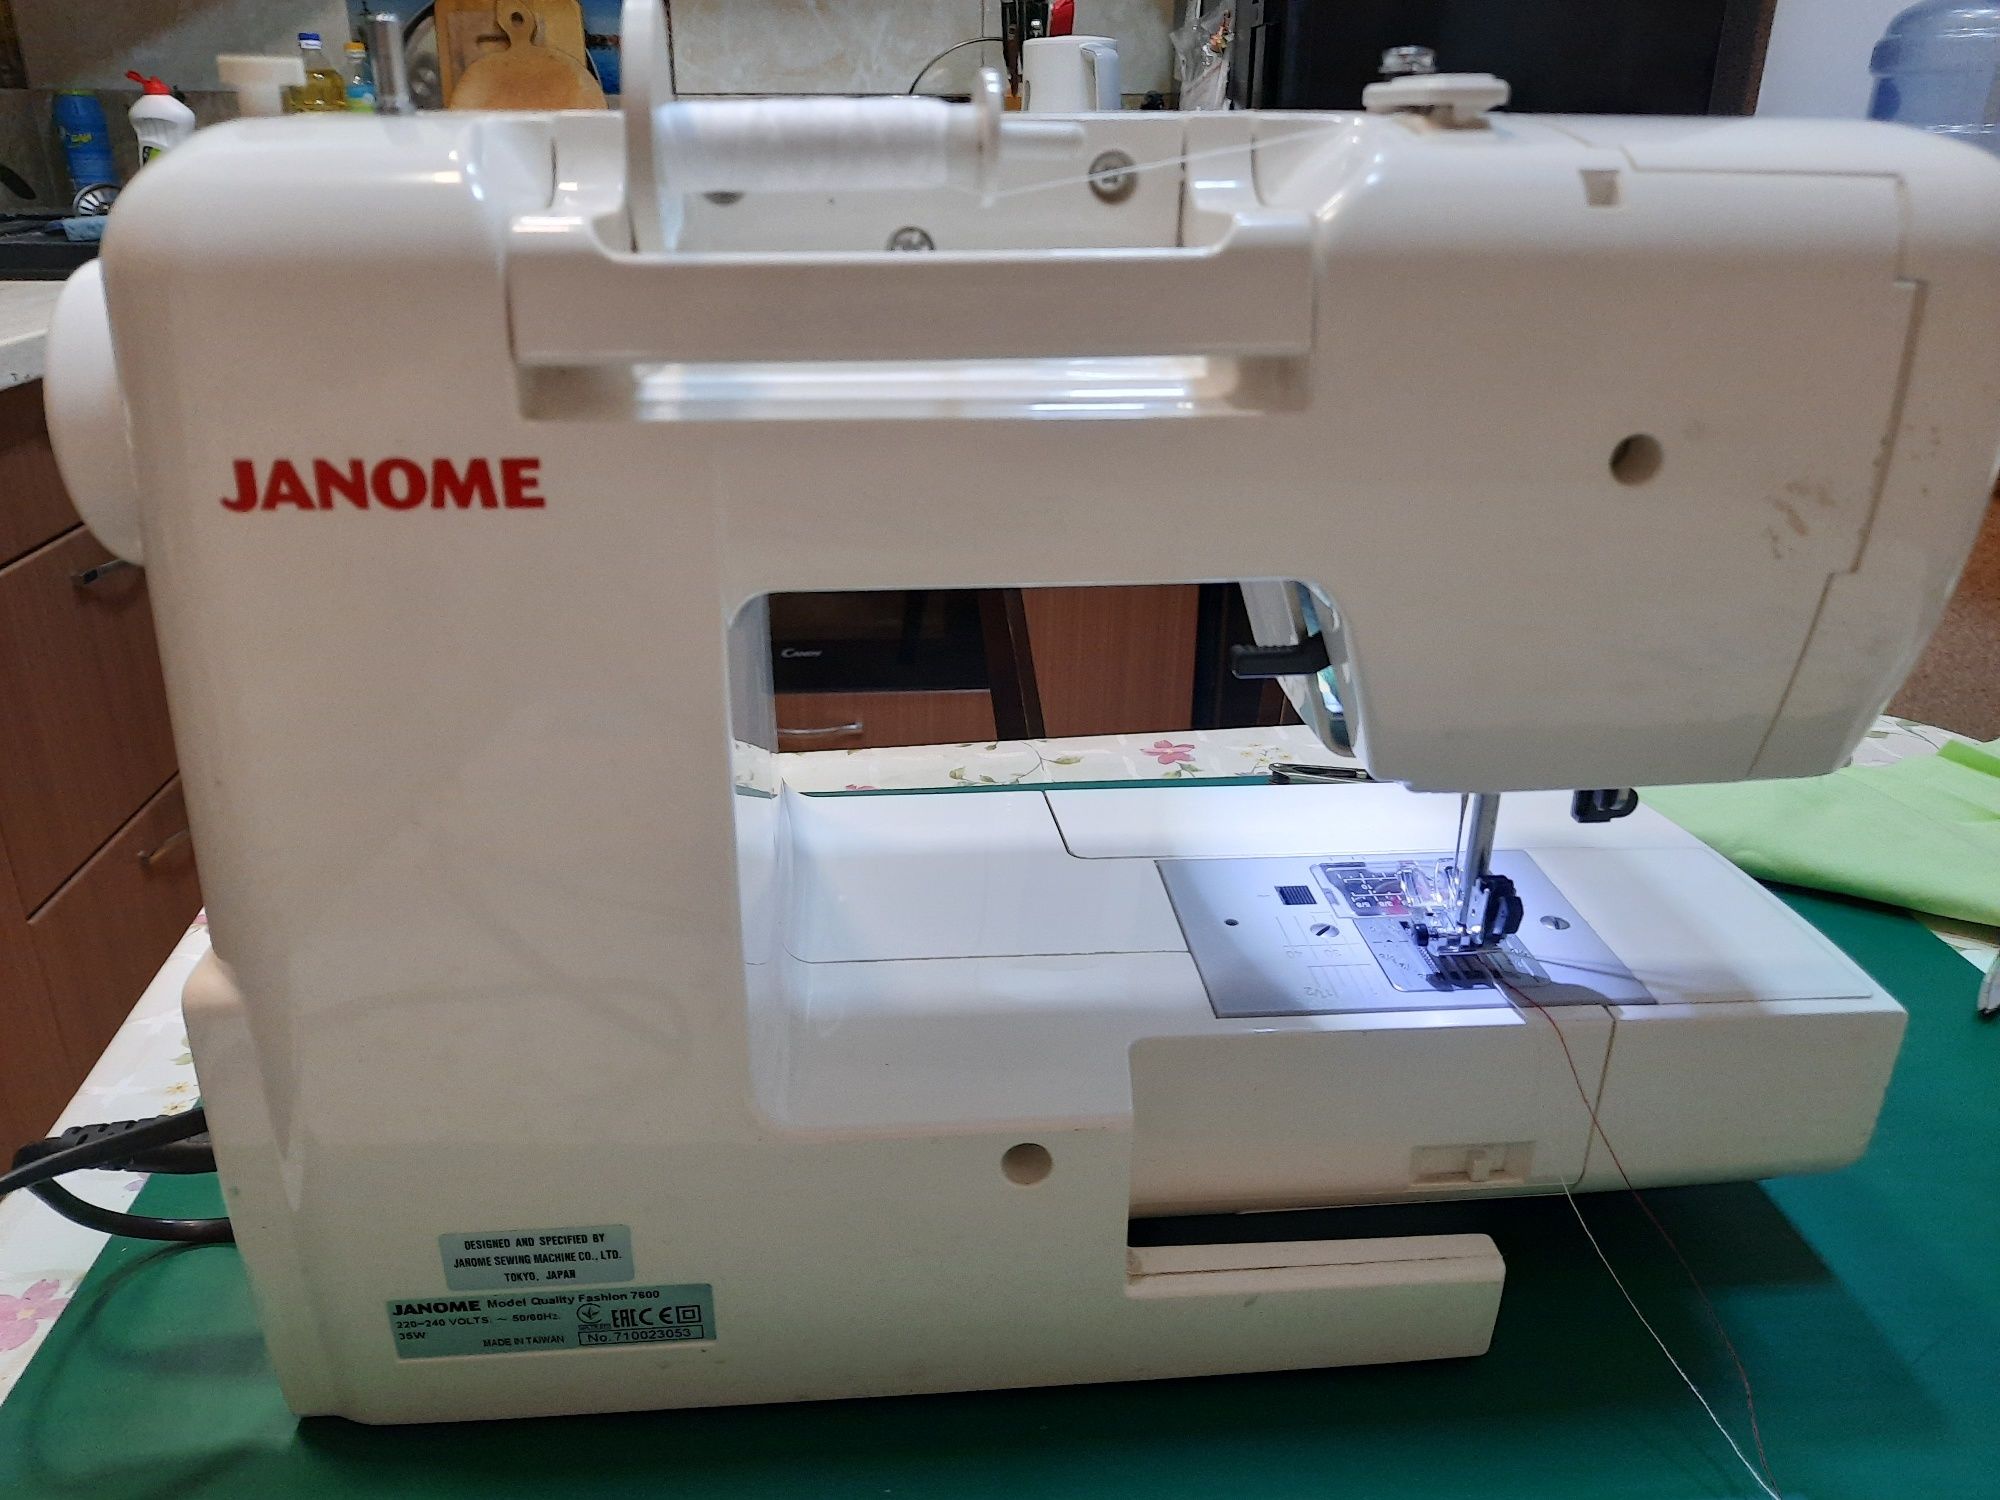 Продам швейну машину б/у  Janome Quality Fashion 7600